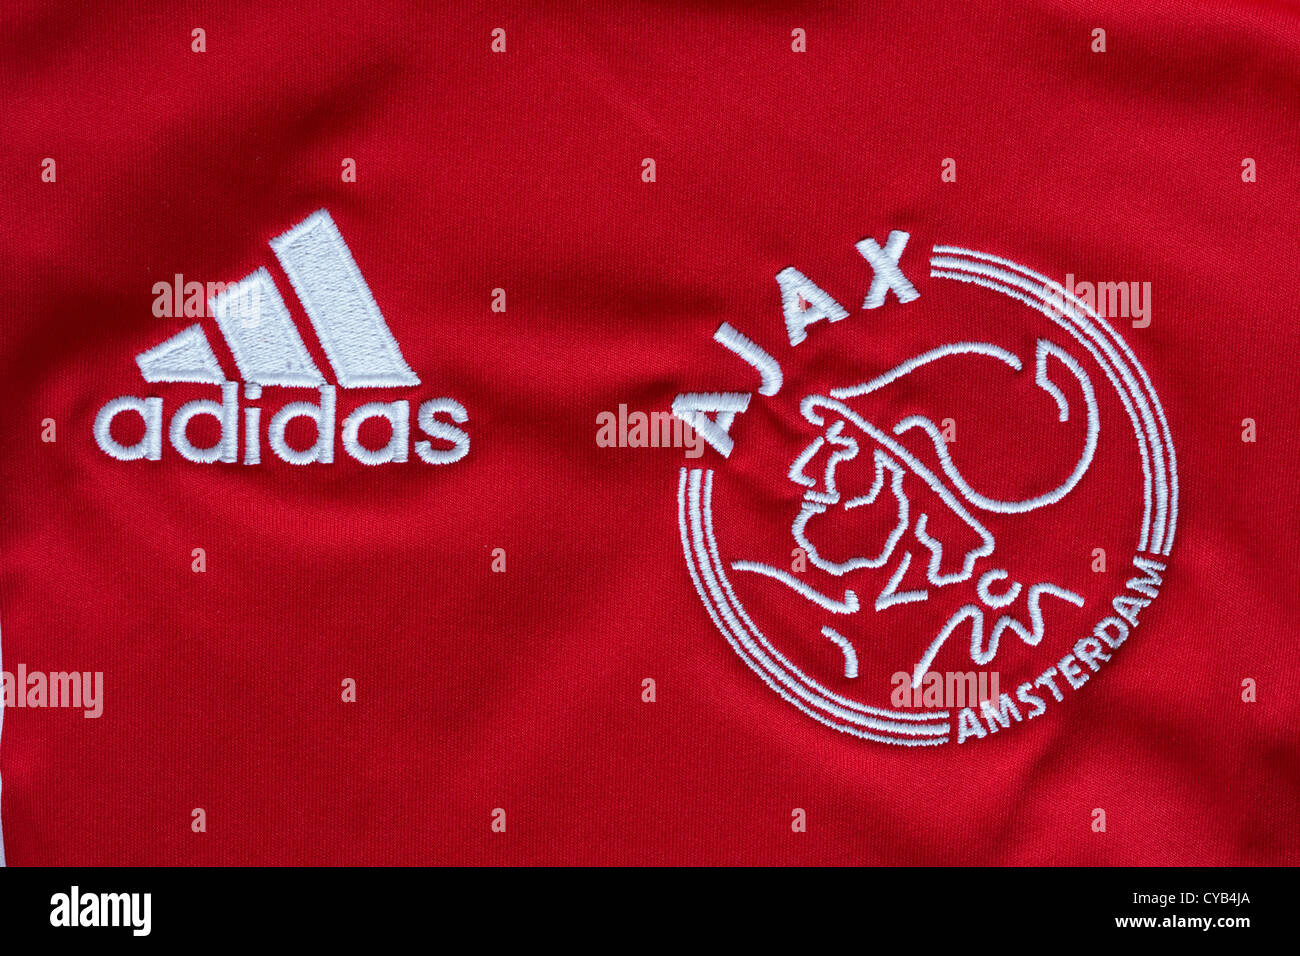 Logo adidas et de l'Ajax Amsterdam logos sur maillot de football rouge Banque D'Images